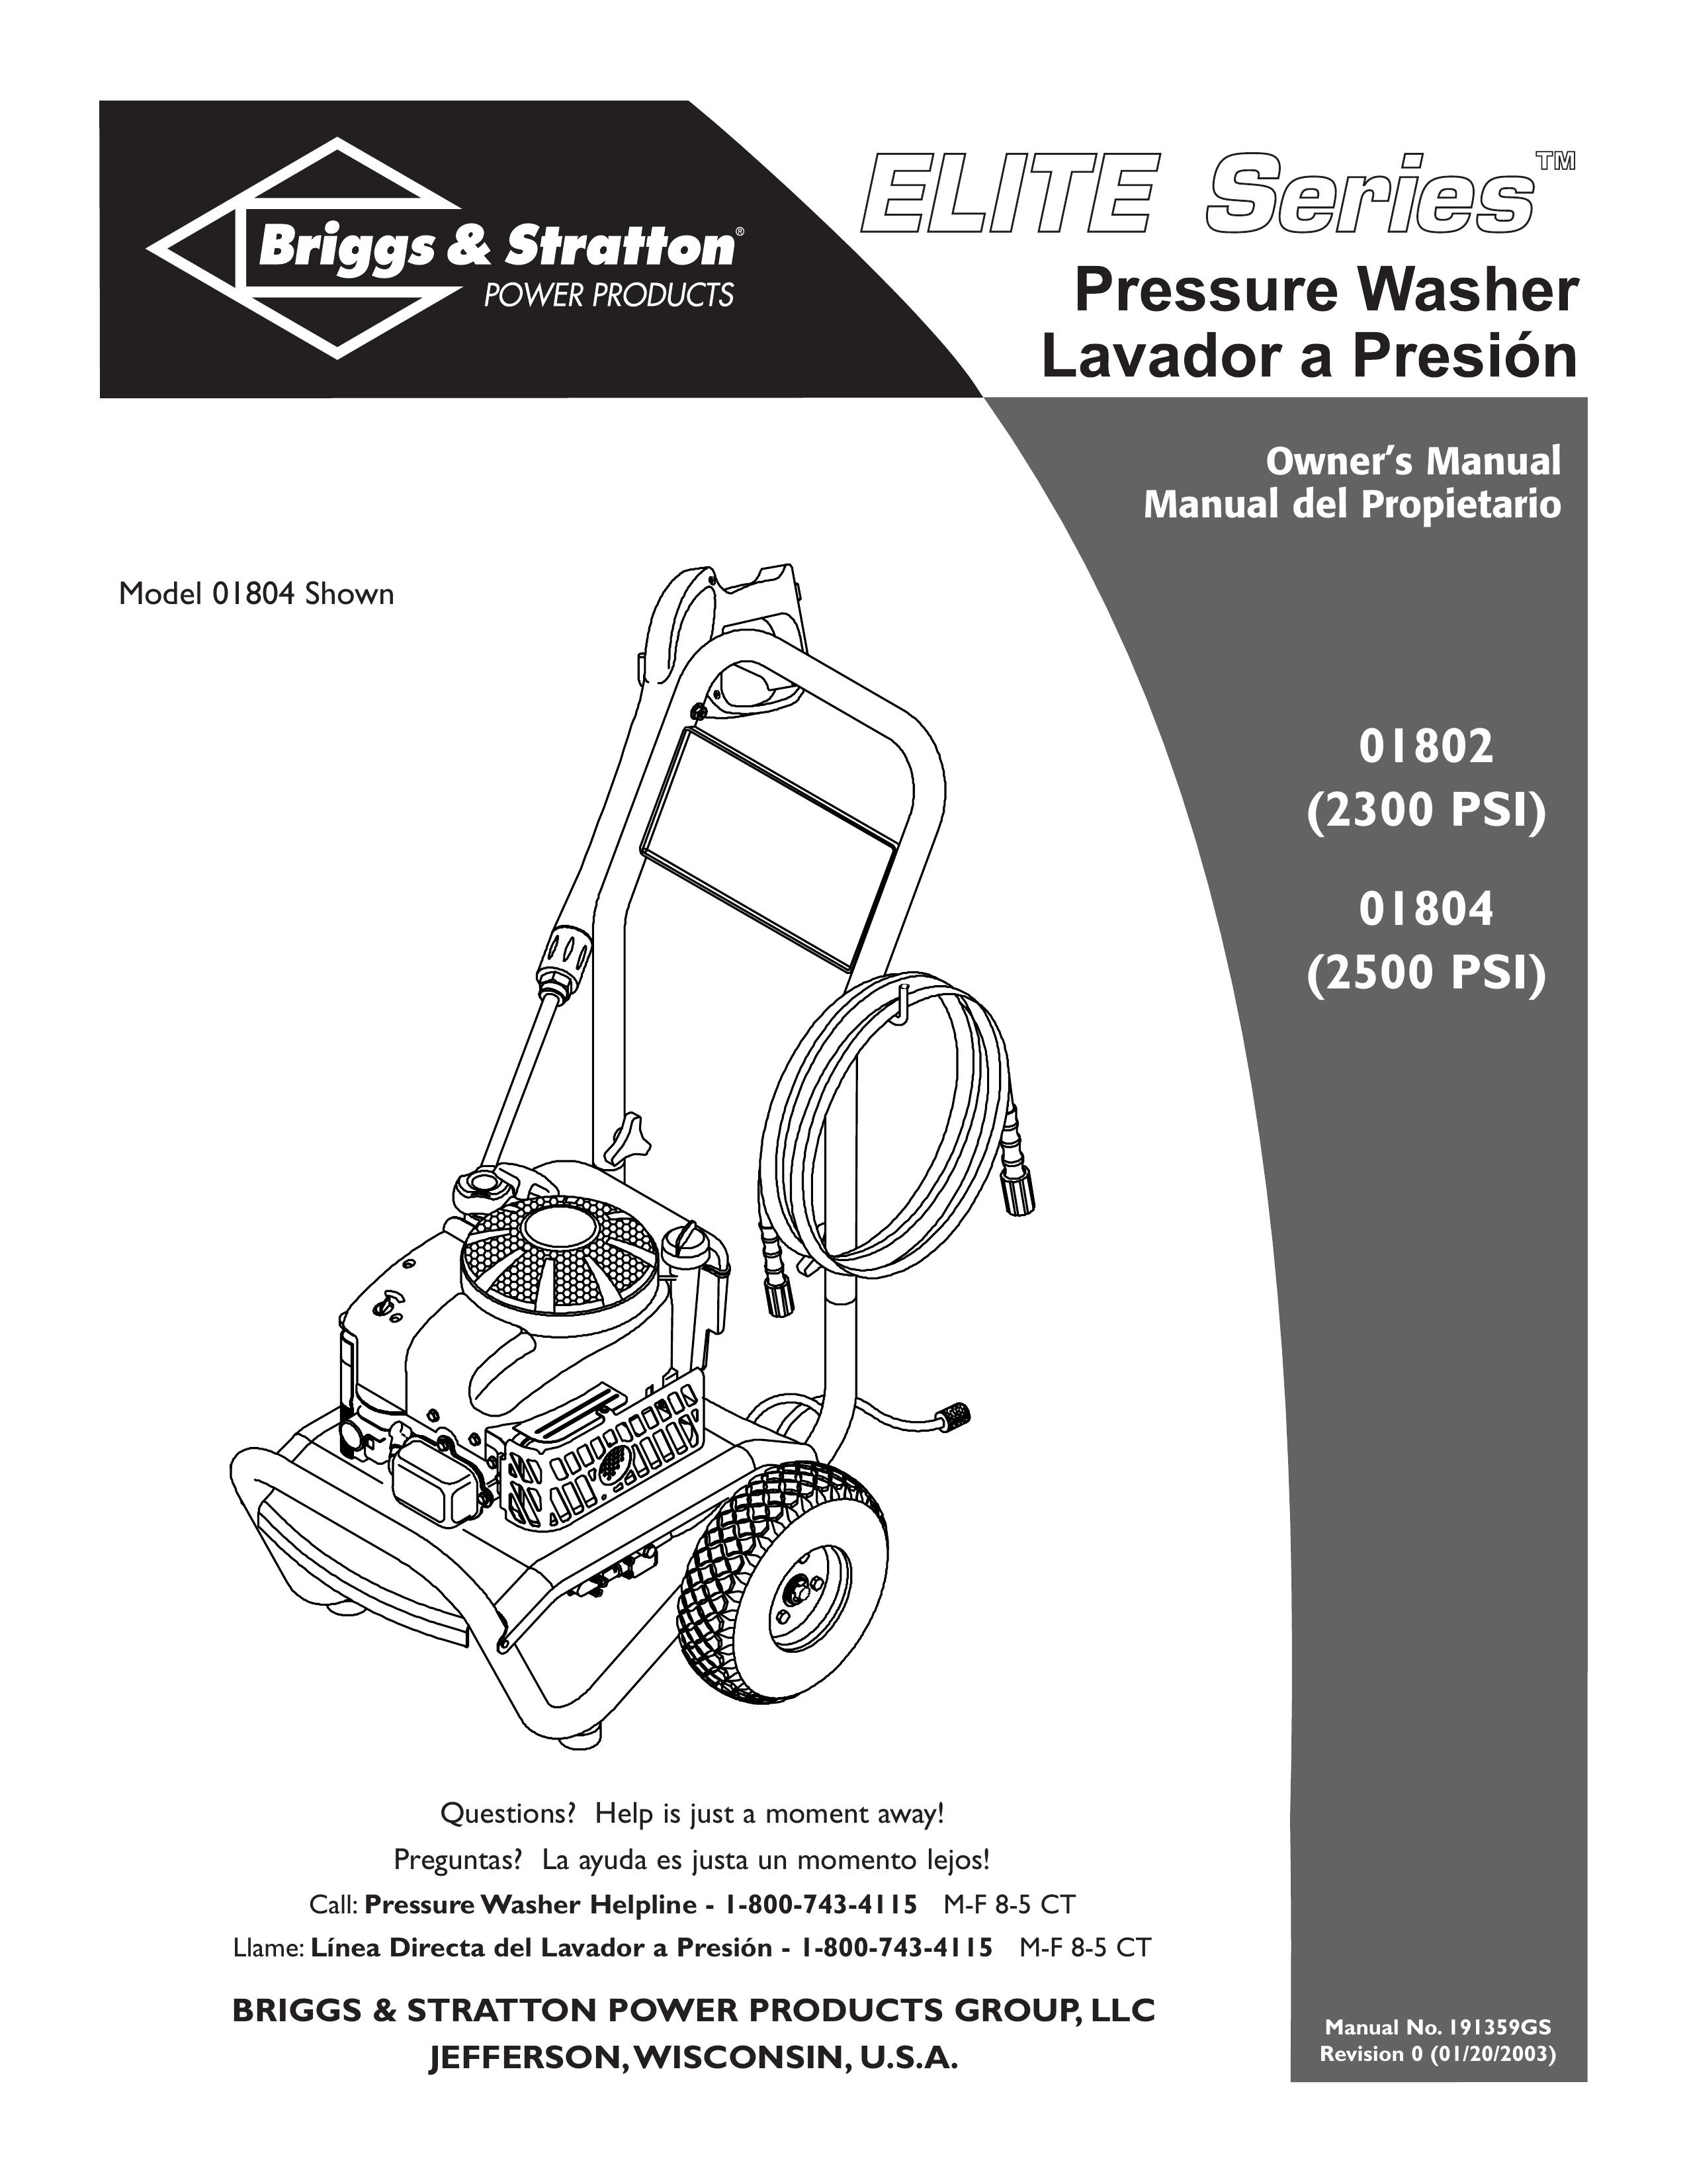 Briggs & Stratton 01804, 01802 Pressure Washer User Manual